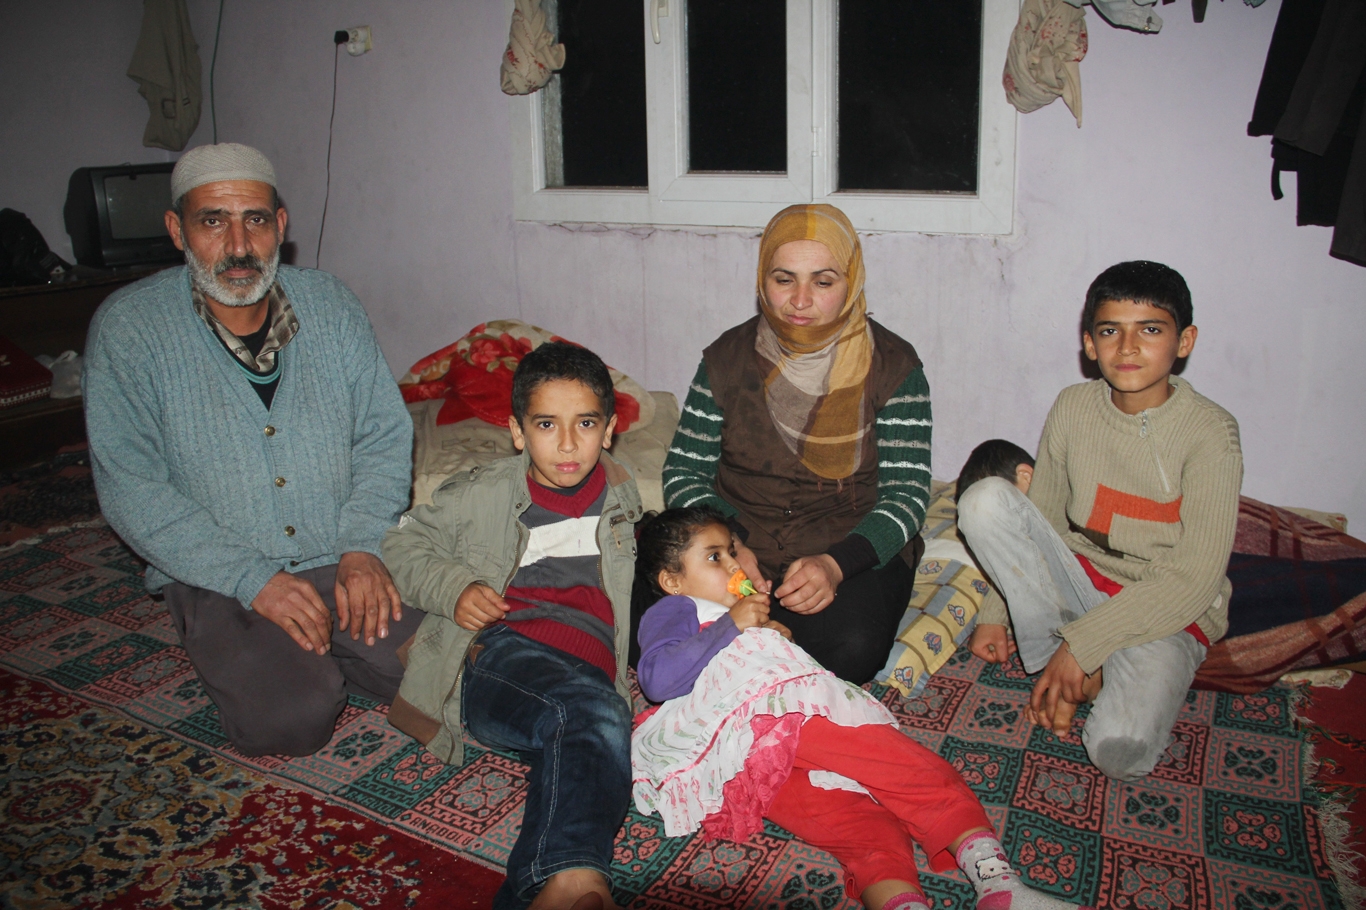 Cizre’den Midyat’a göç eden Suriyeli aileler yardım bekliyor